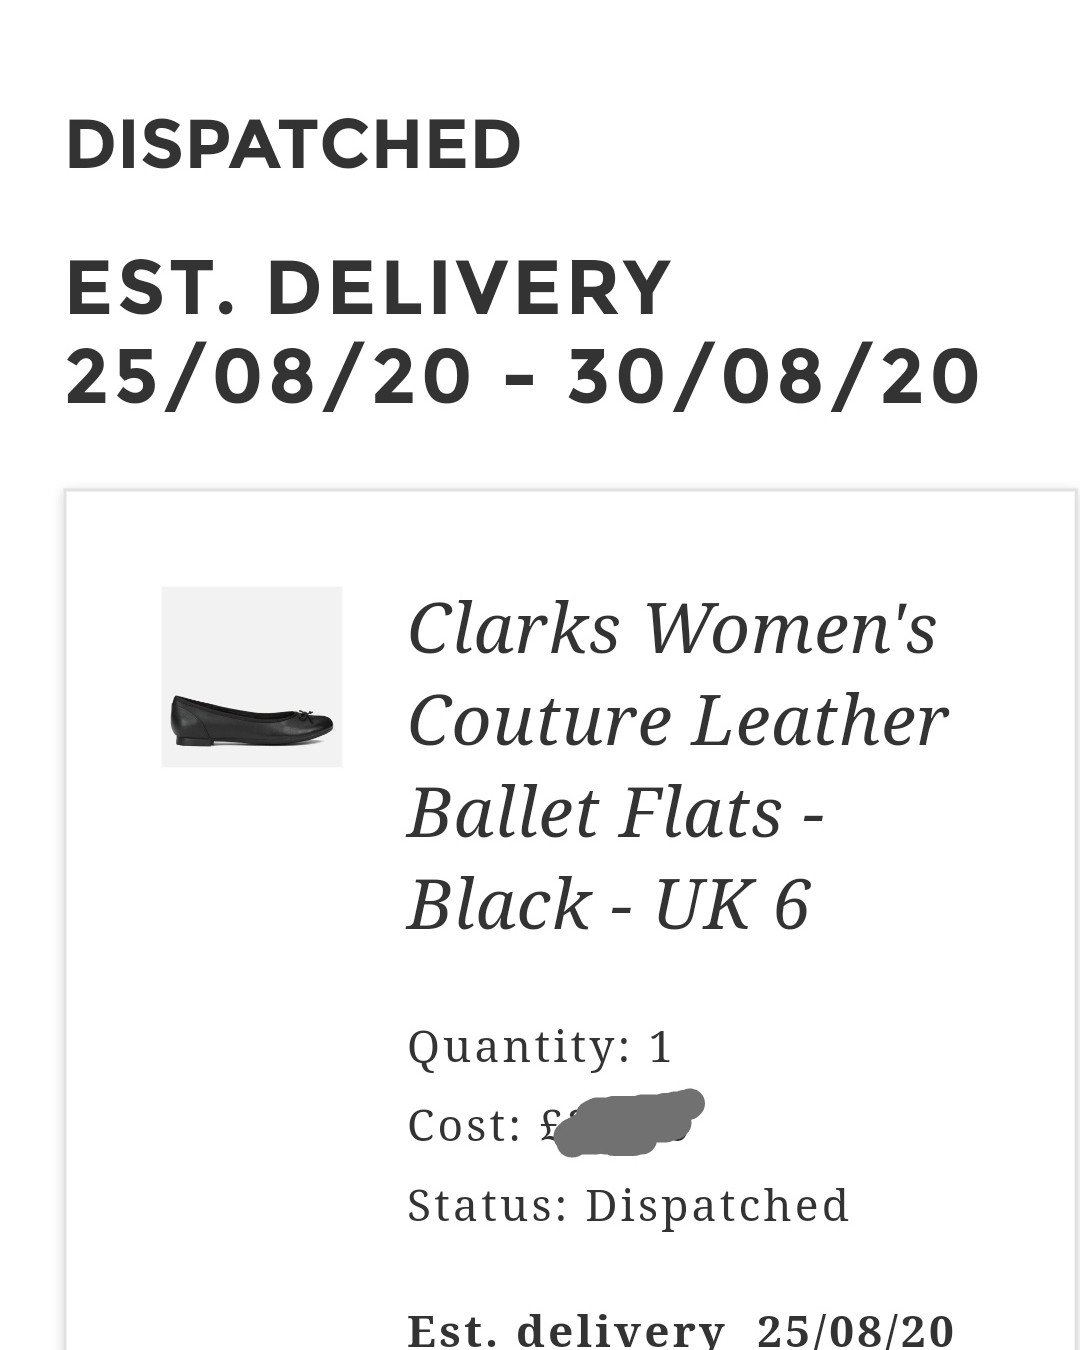 出一双买大了的Clarks平底皮鞋。喜欢这个款式的姐妹可私聊